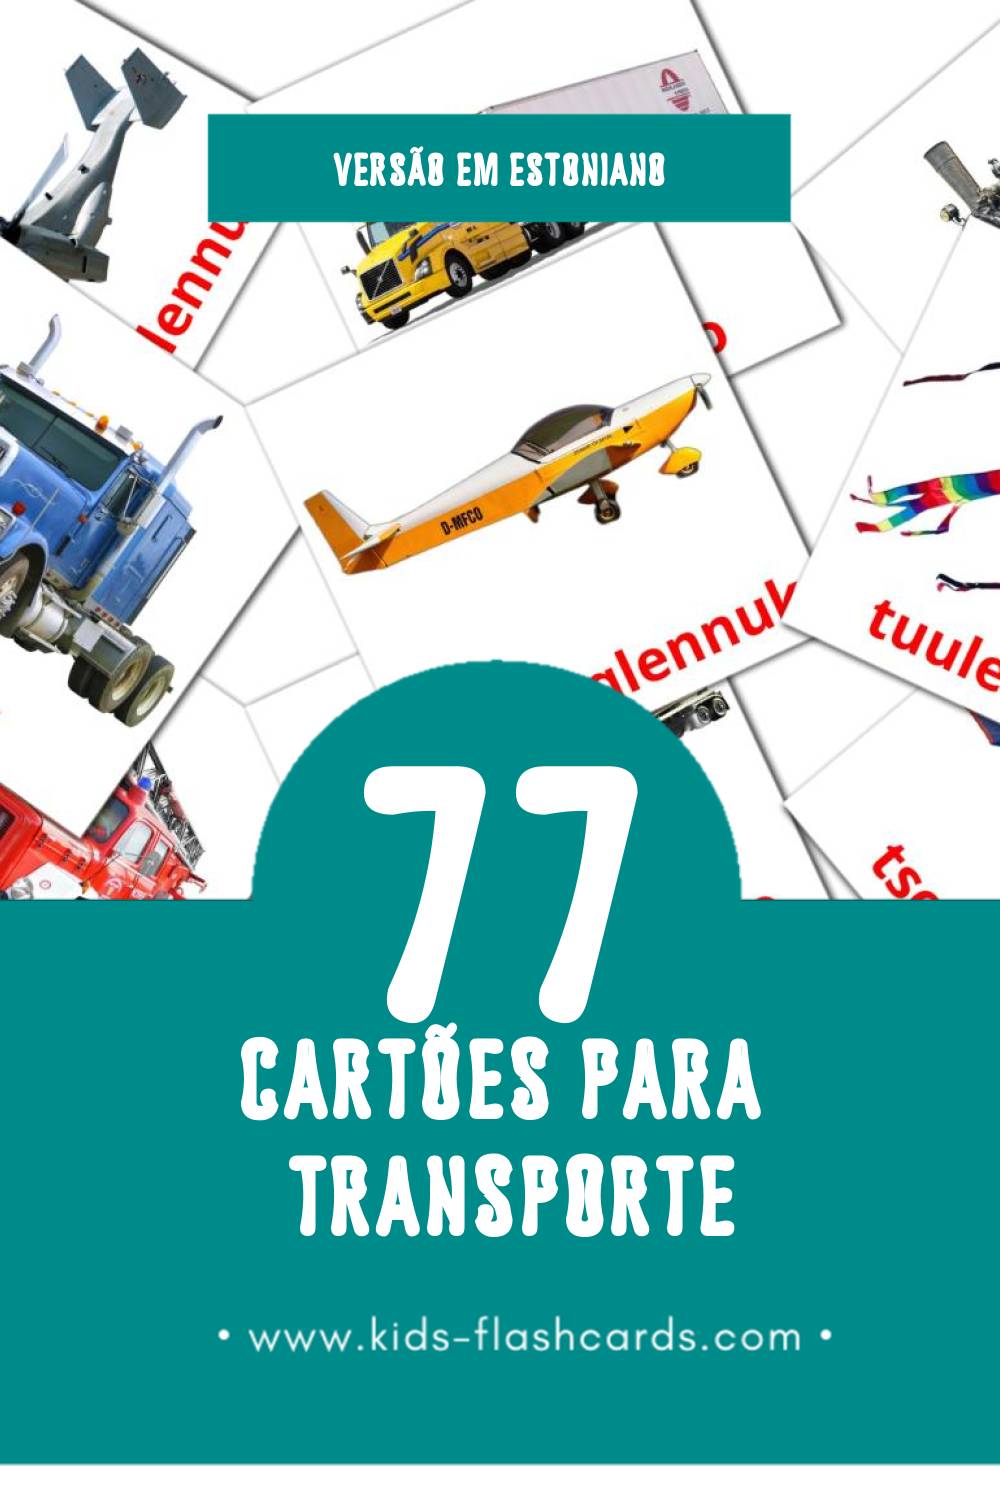 Flashcards de Transport Visuais para Toddlers (77 cartões em Estoniano)